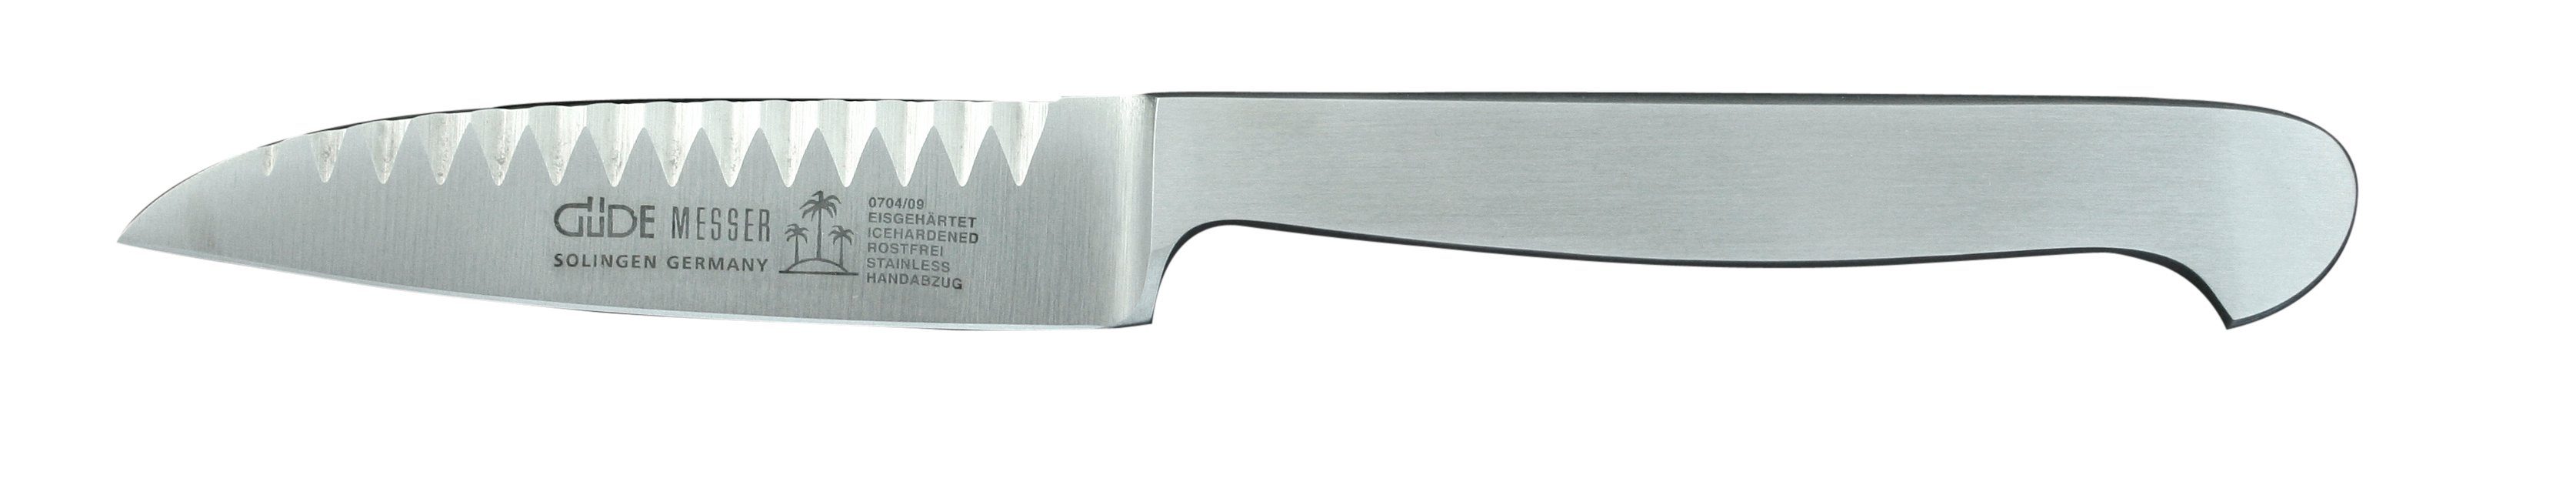 Güde Messer Kappa, Solingen und CVM-Stahl 9 cm Buntschneidemesser Griff Gemüsemesser - Klinge